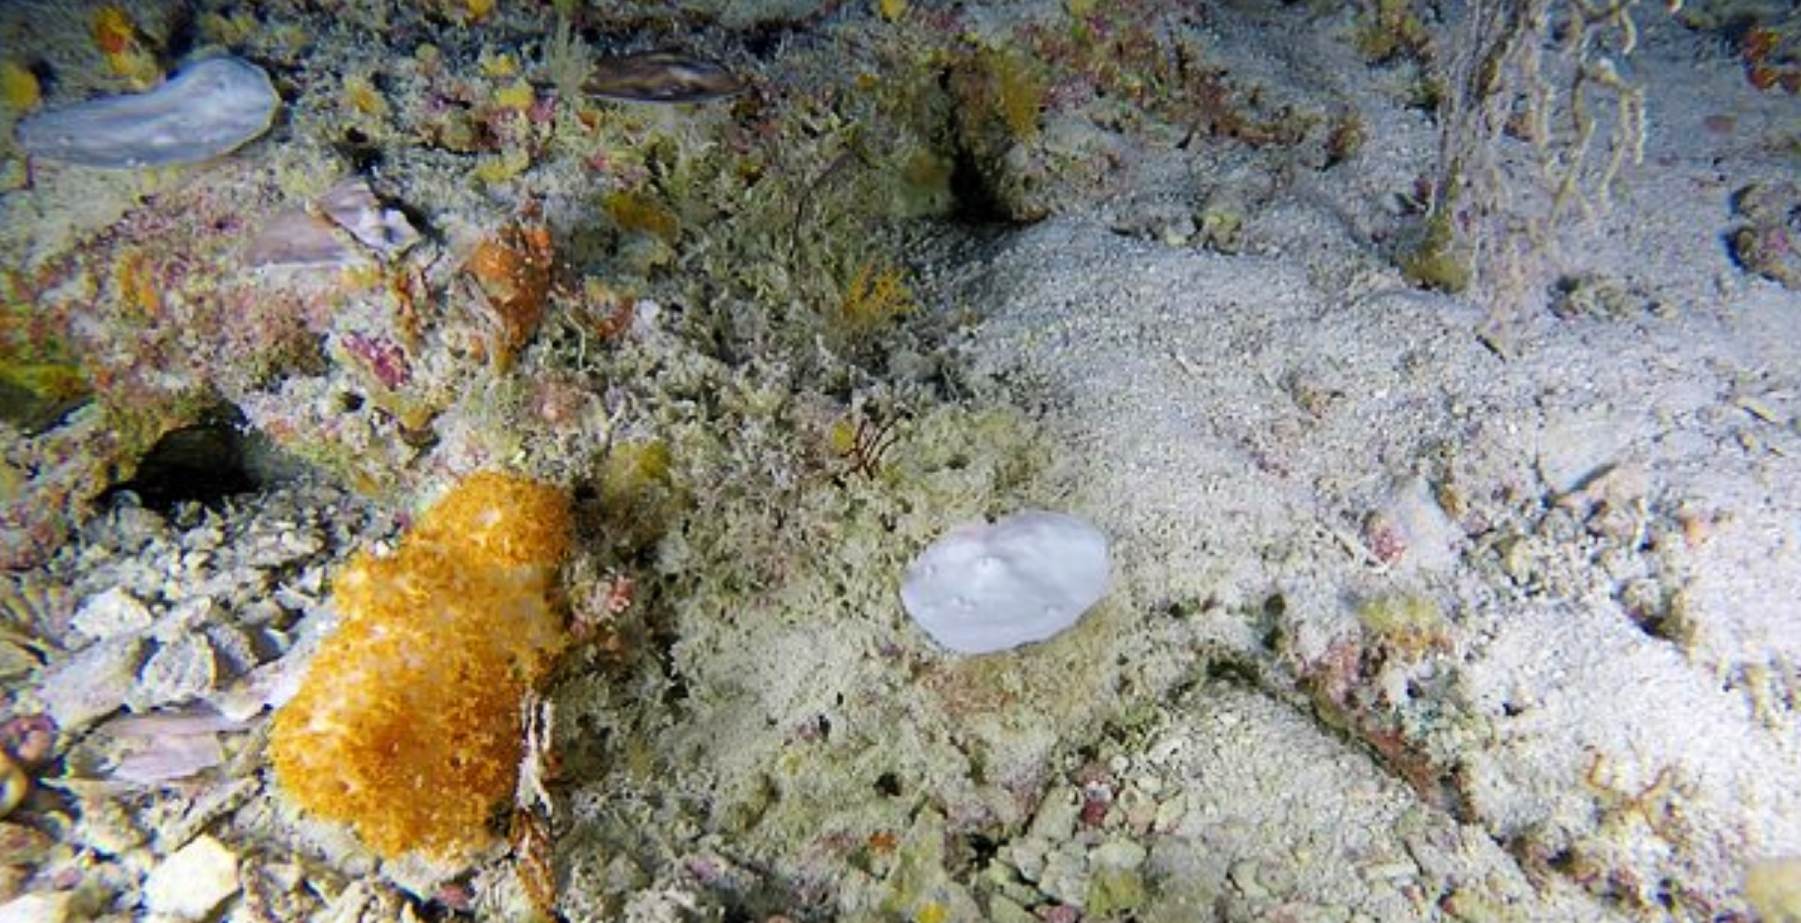 90 m tief: Die Korallenbleiche dringt tief ein